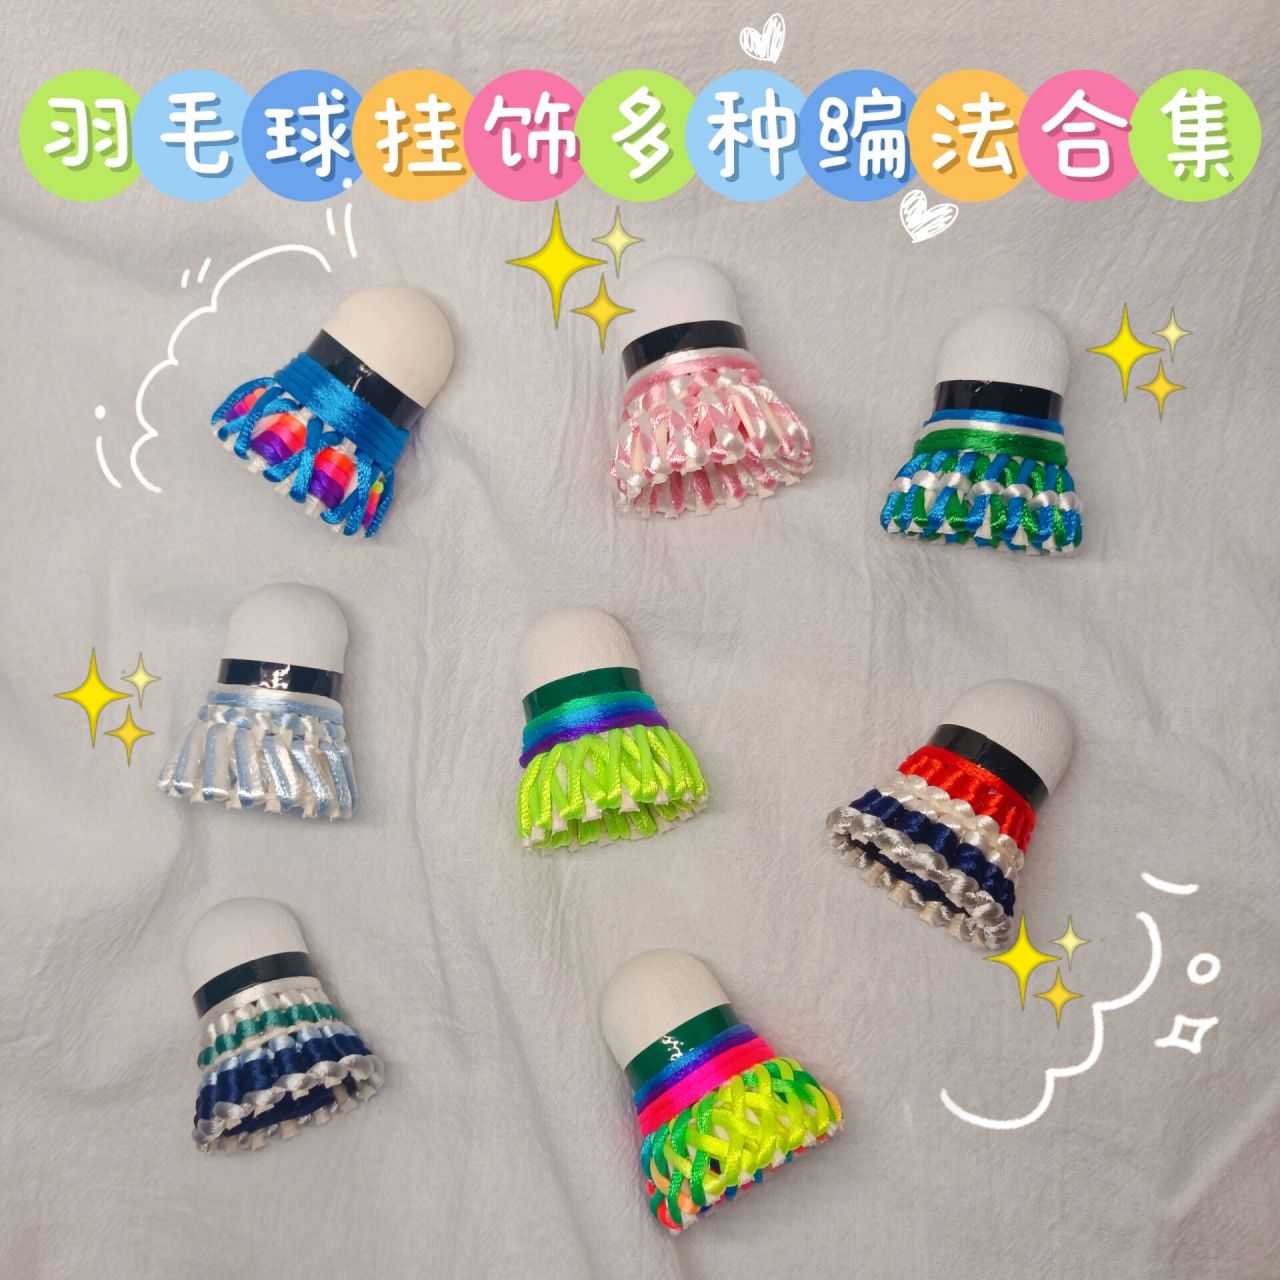 给大家分享一下用这种彩绳经常编的几种羽毛球挂饰的编织方法,不知道